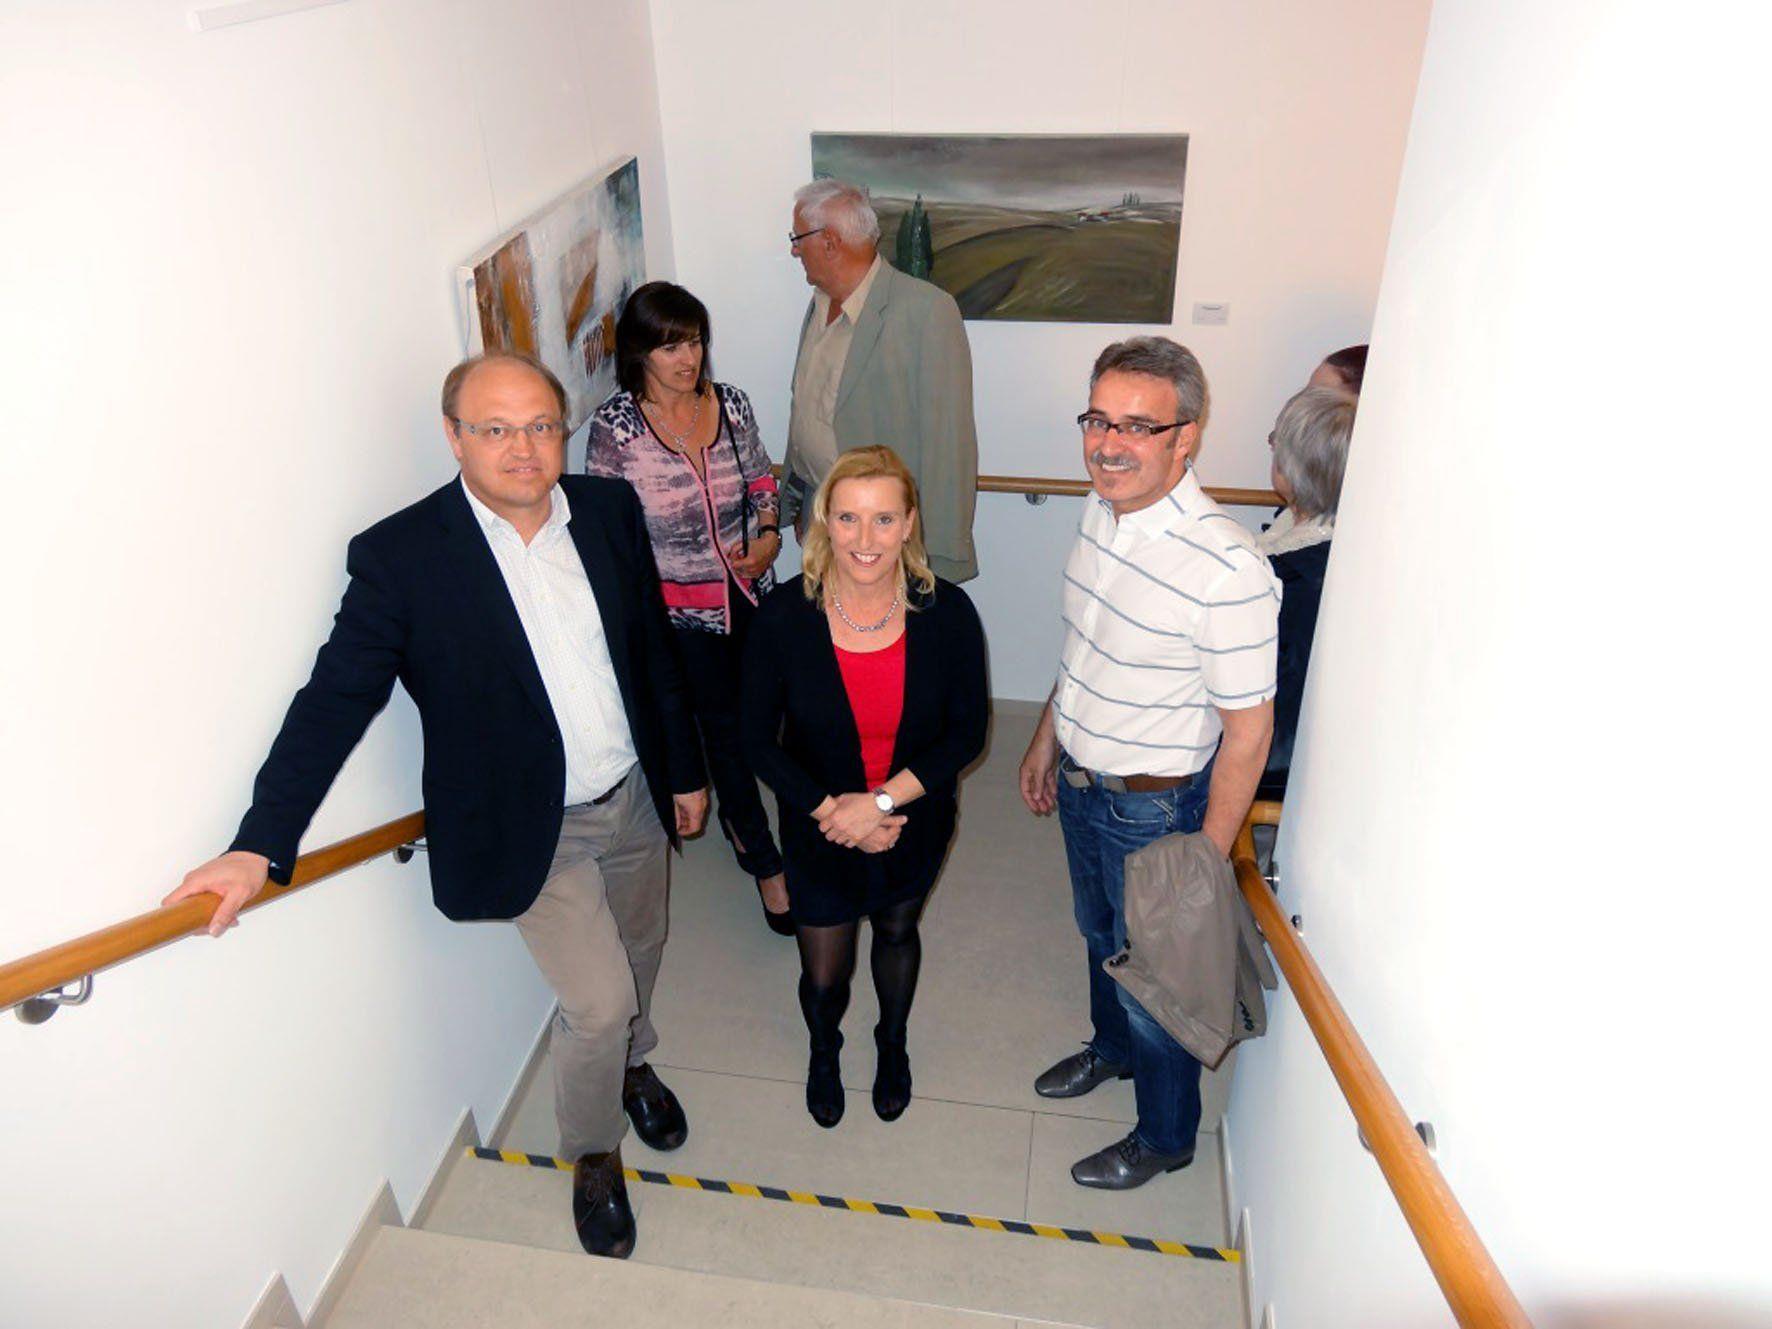 v.l.n.r: Bgm. Elmar Rhomberg und die Künstlerin Ingrid Böhler mit weiteren Gästen .